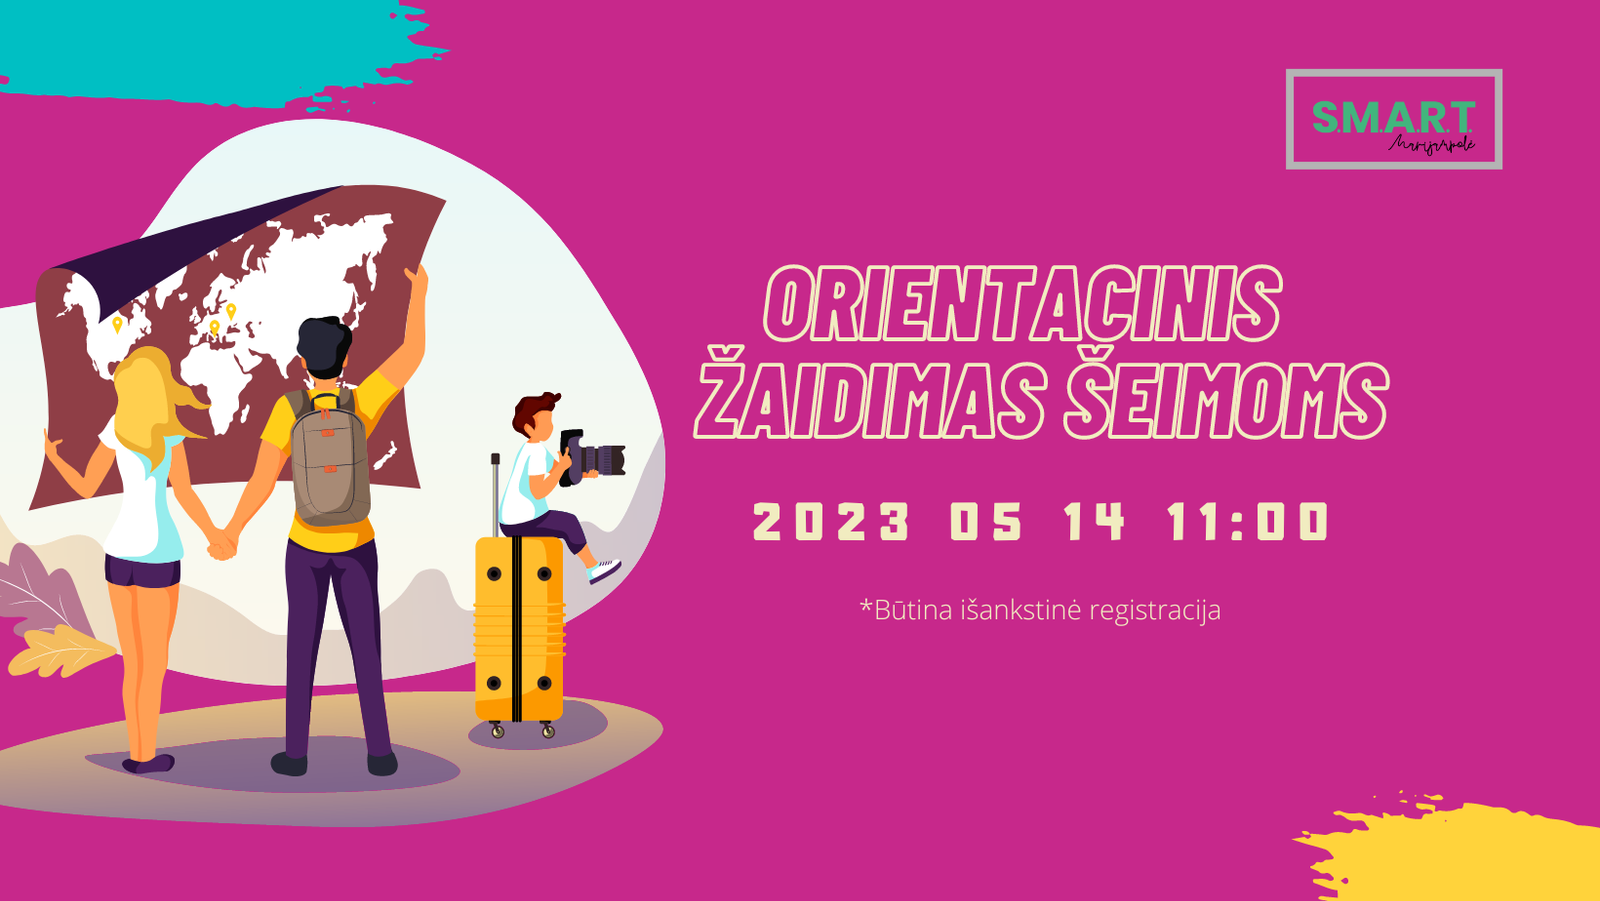 You are currently viewing Minint Tarptautinę šeimos dieną Marijampolėje organizuojamas orientacinis žaidimas šeimoms